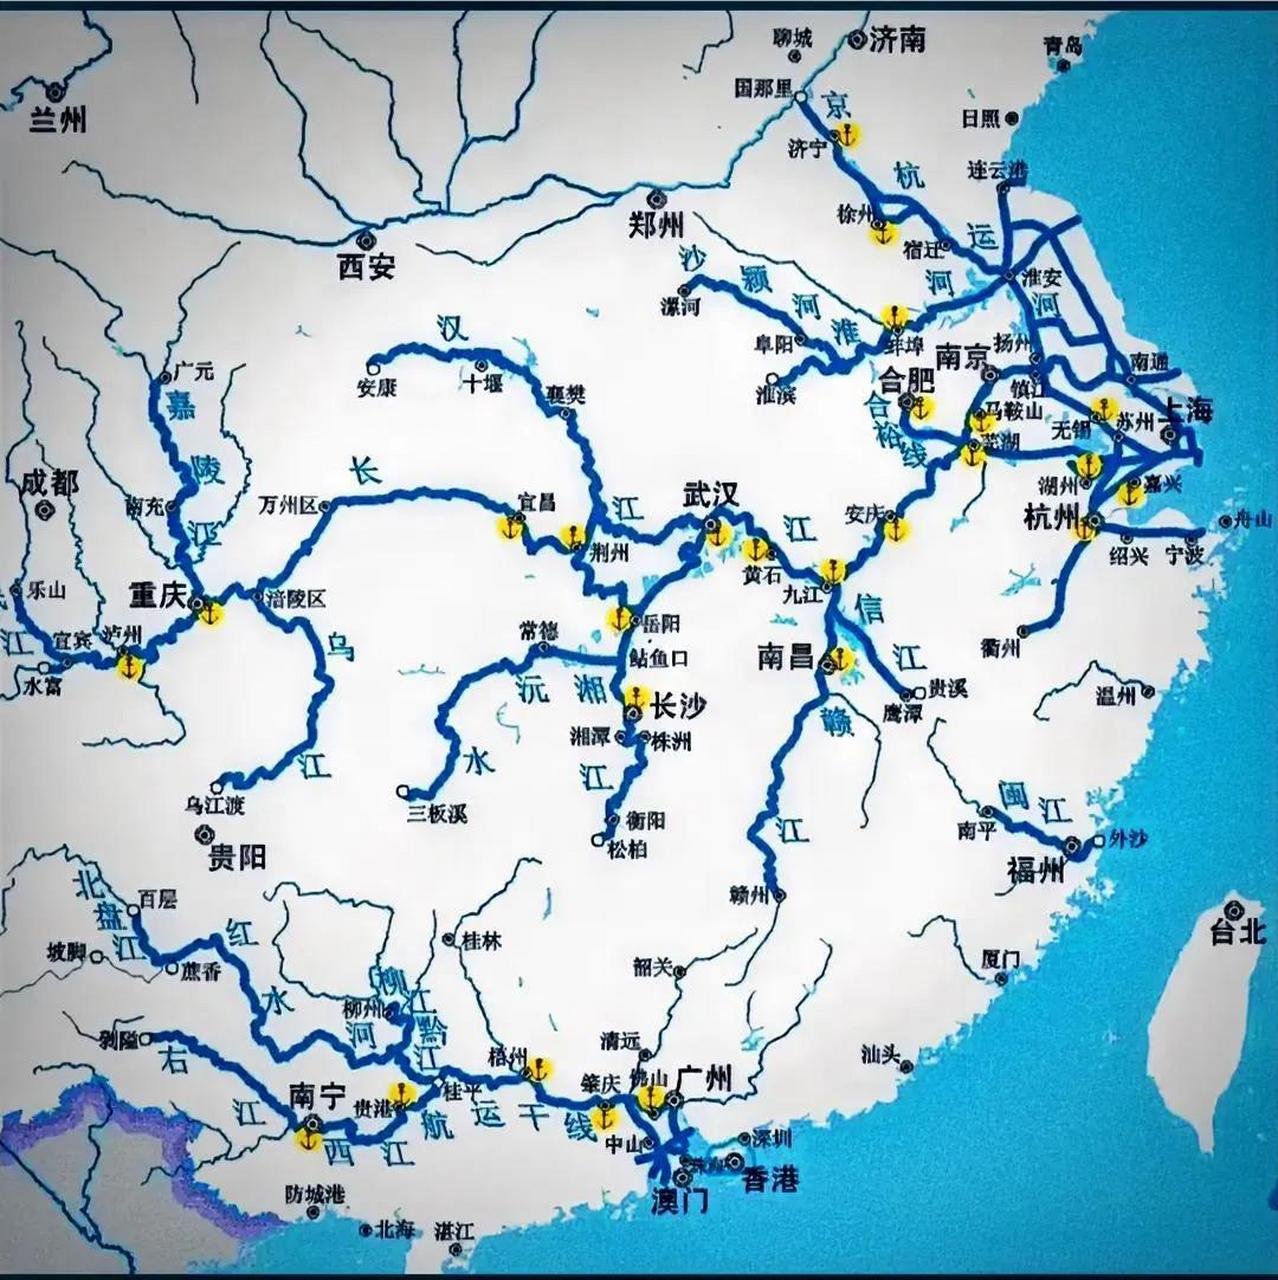 盘点中国内河航道图,主要是长江,珠江,淮河,京杭大运河南段